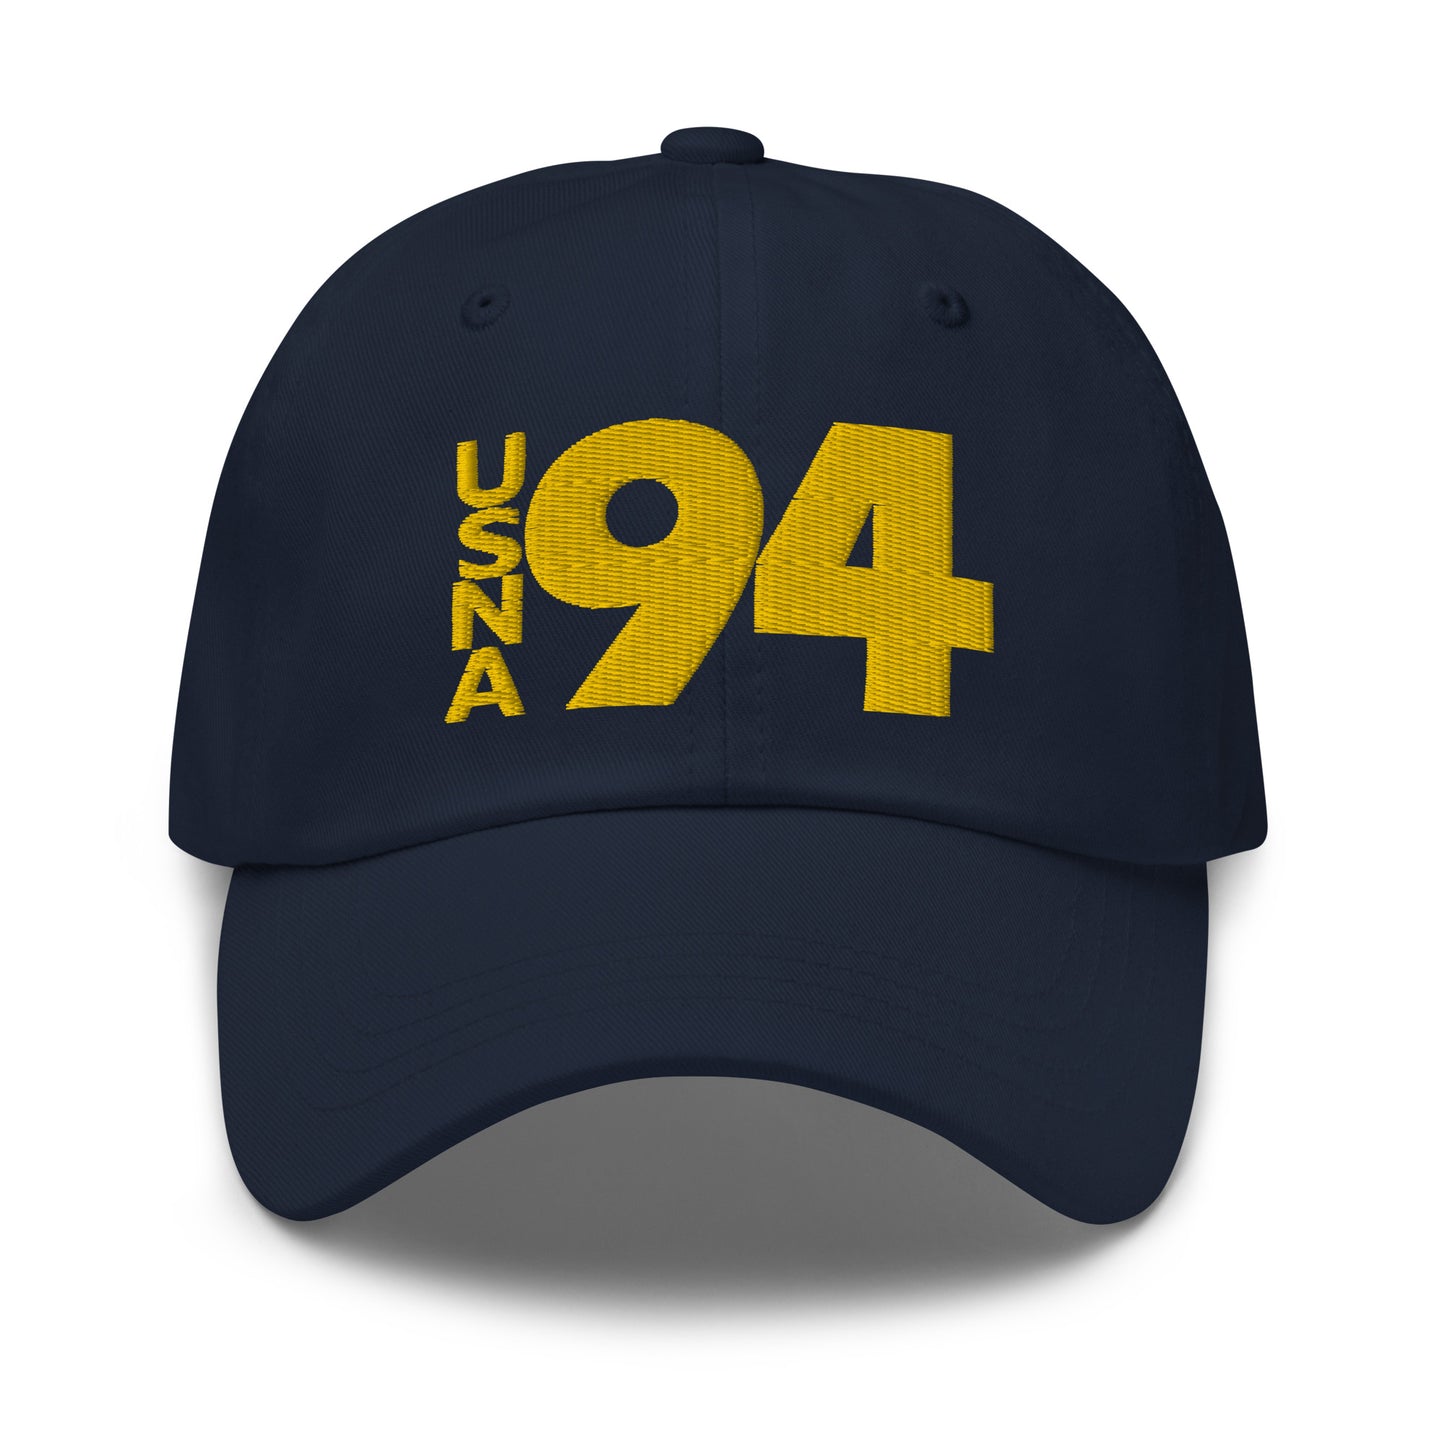 USNA '94 Hat